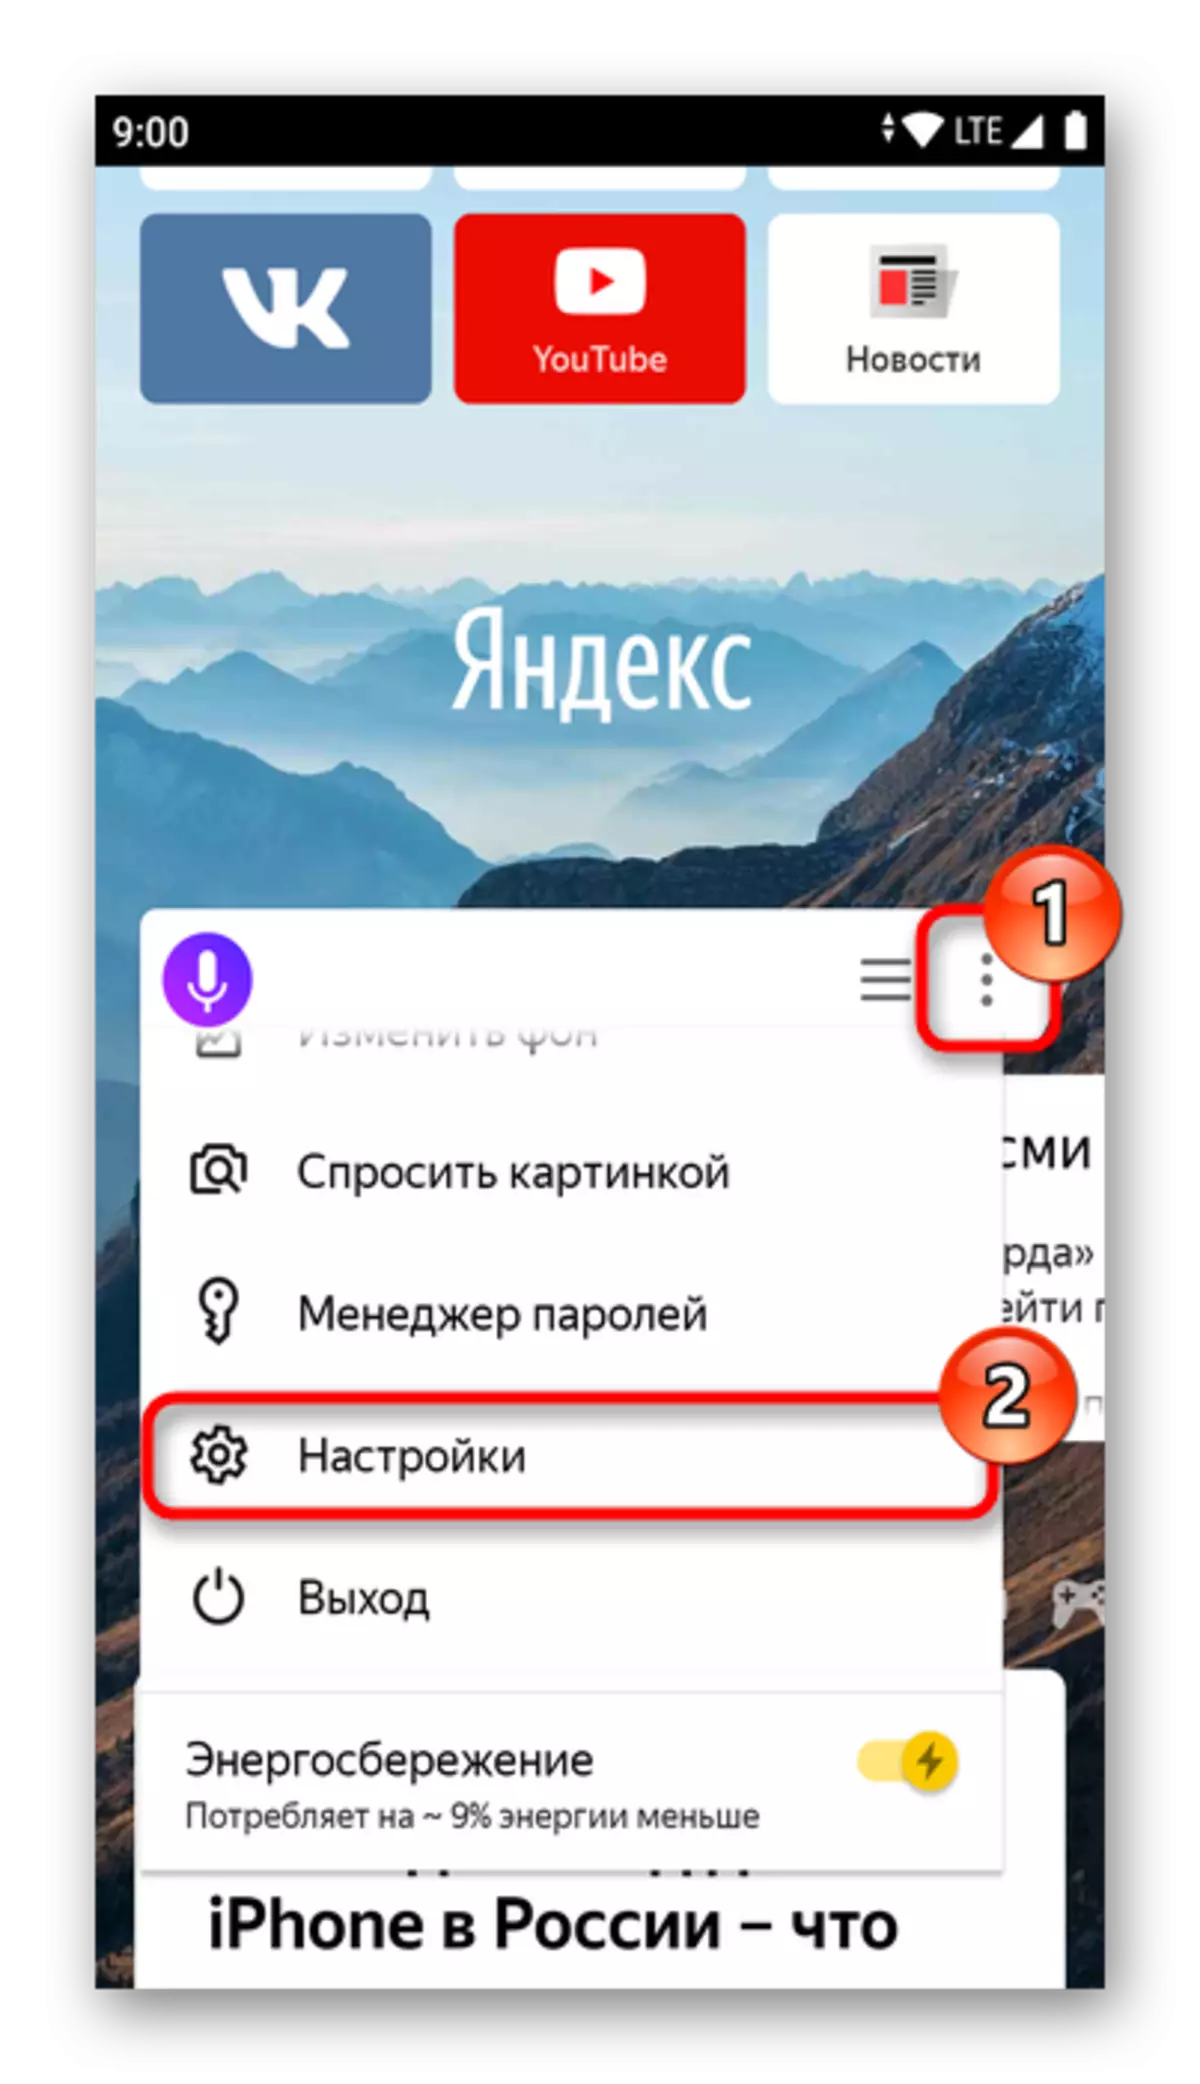 تسجيل الدخول إلى القائمة موبايل Yandex.Bauser إعدادات